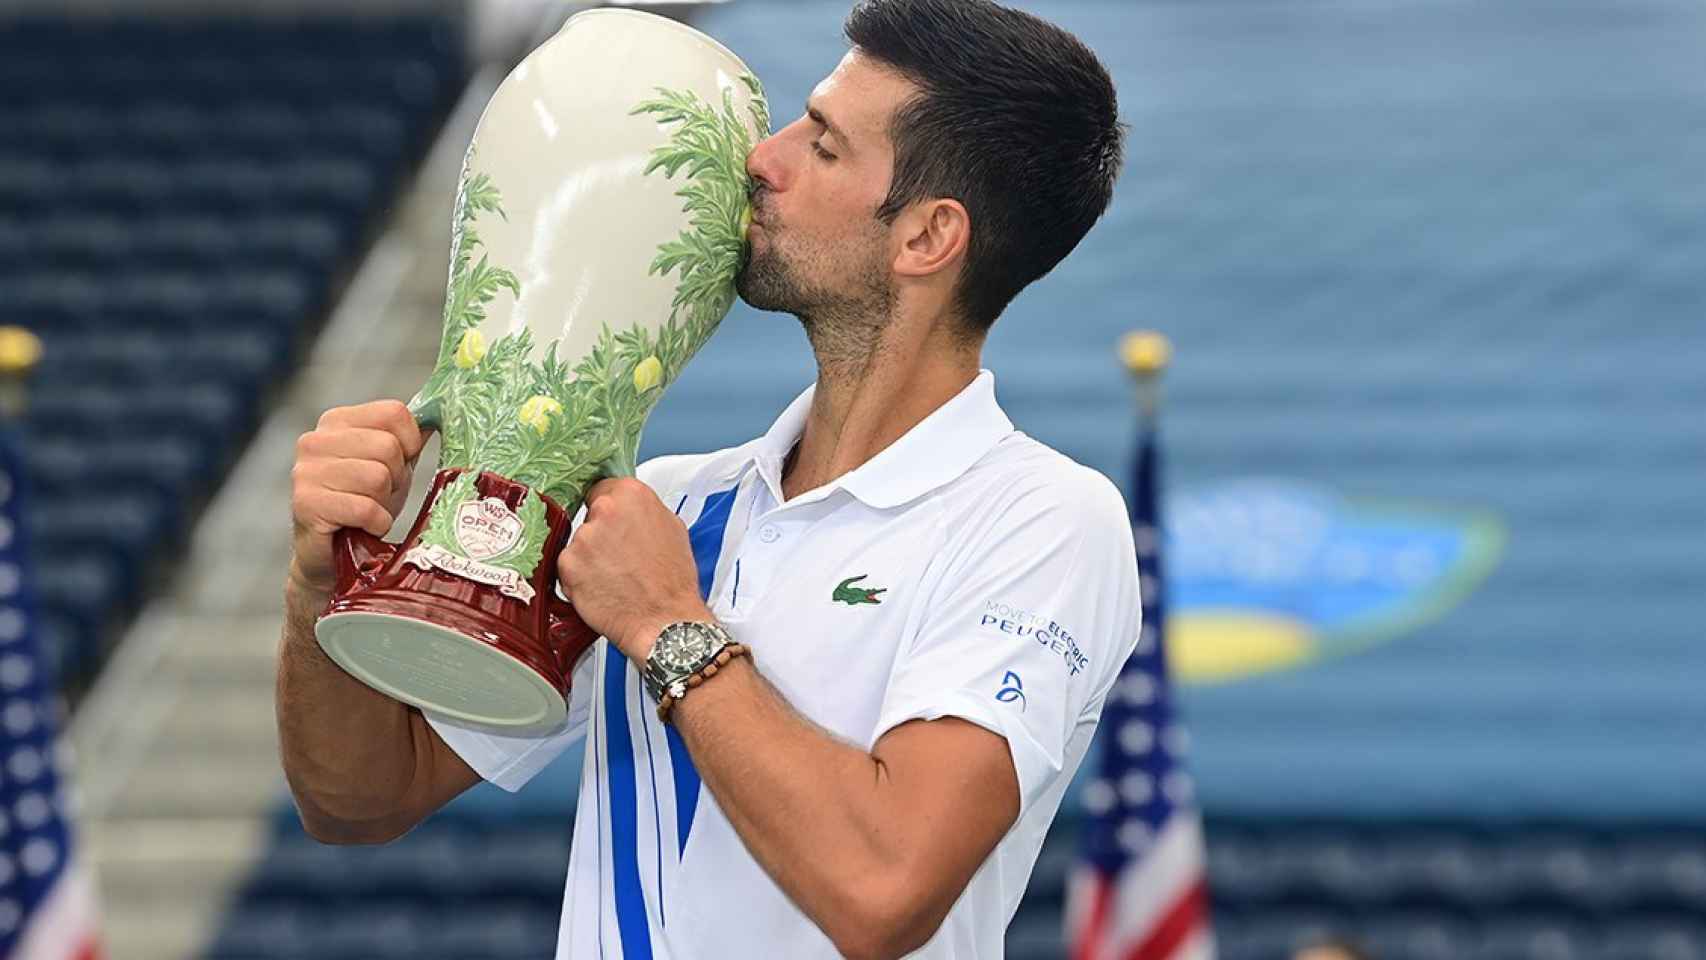 Tênis: Djokovic vira sobre Raonic e conquista Masters 1000 de Cincinnati -  Jornal O Globo